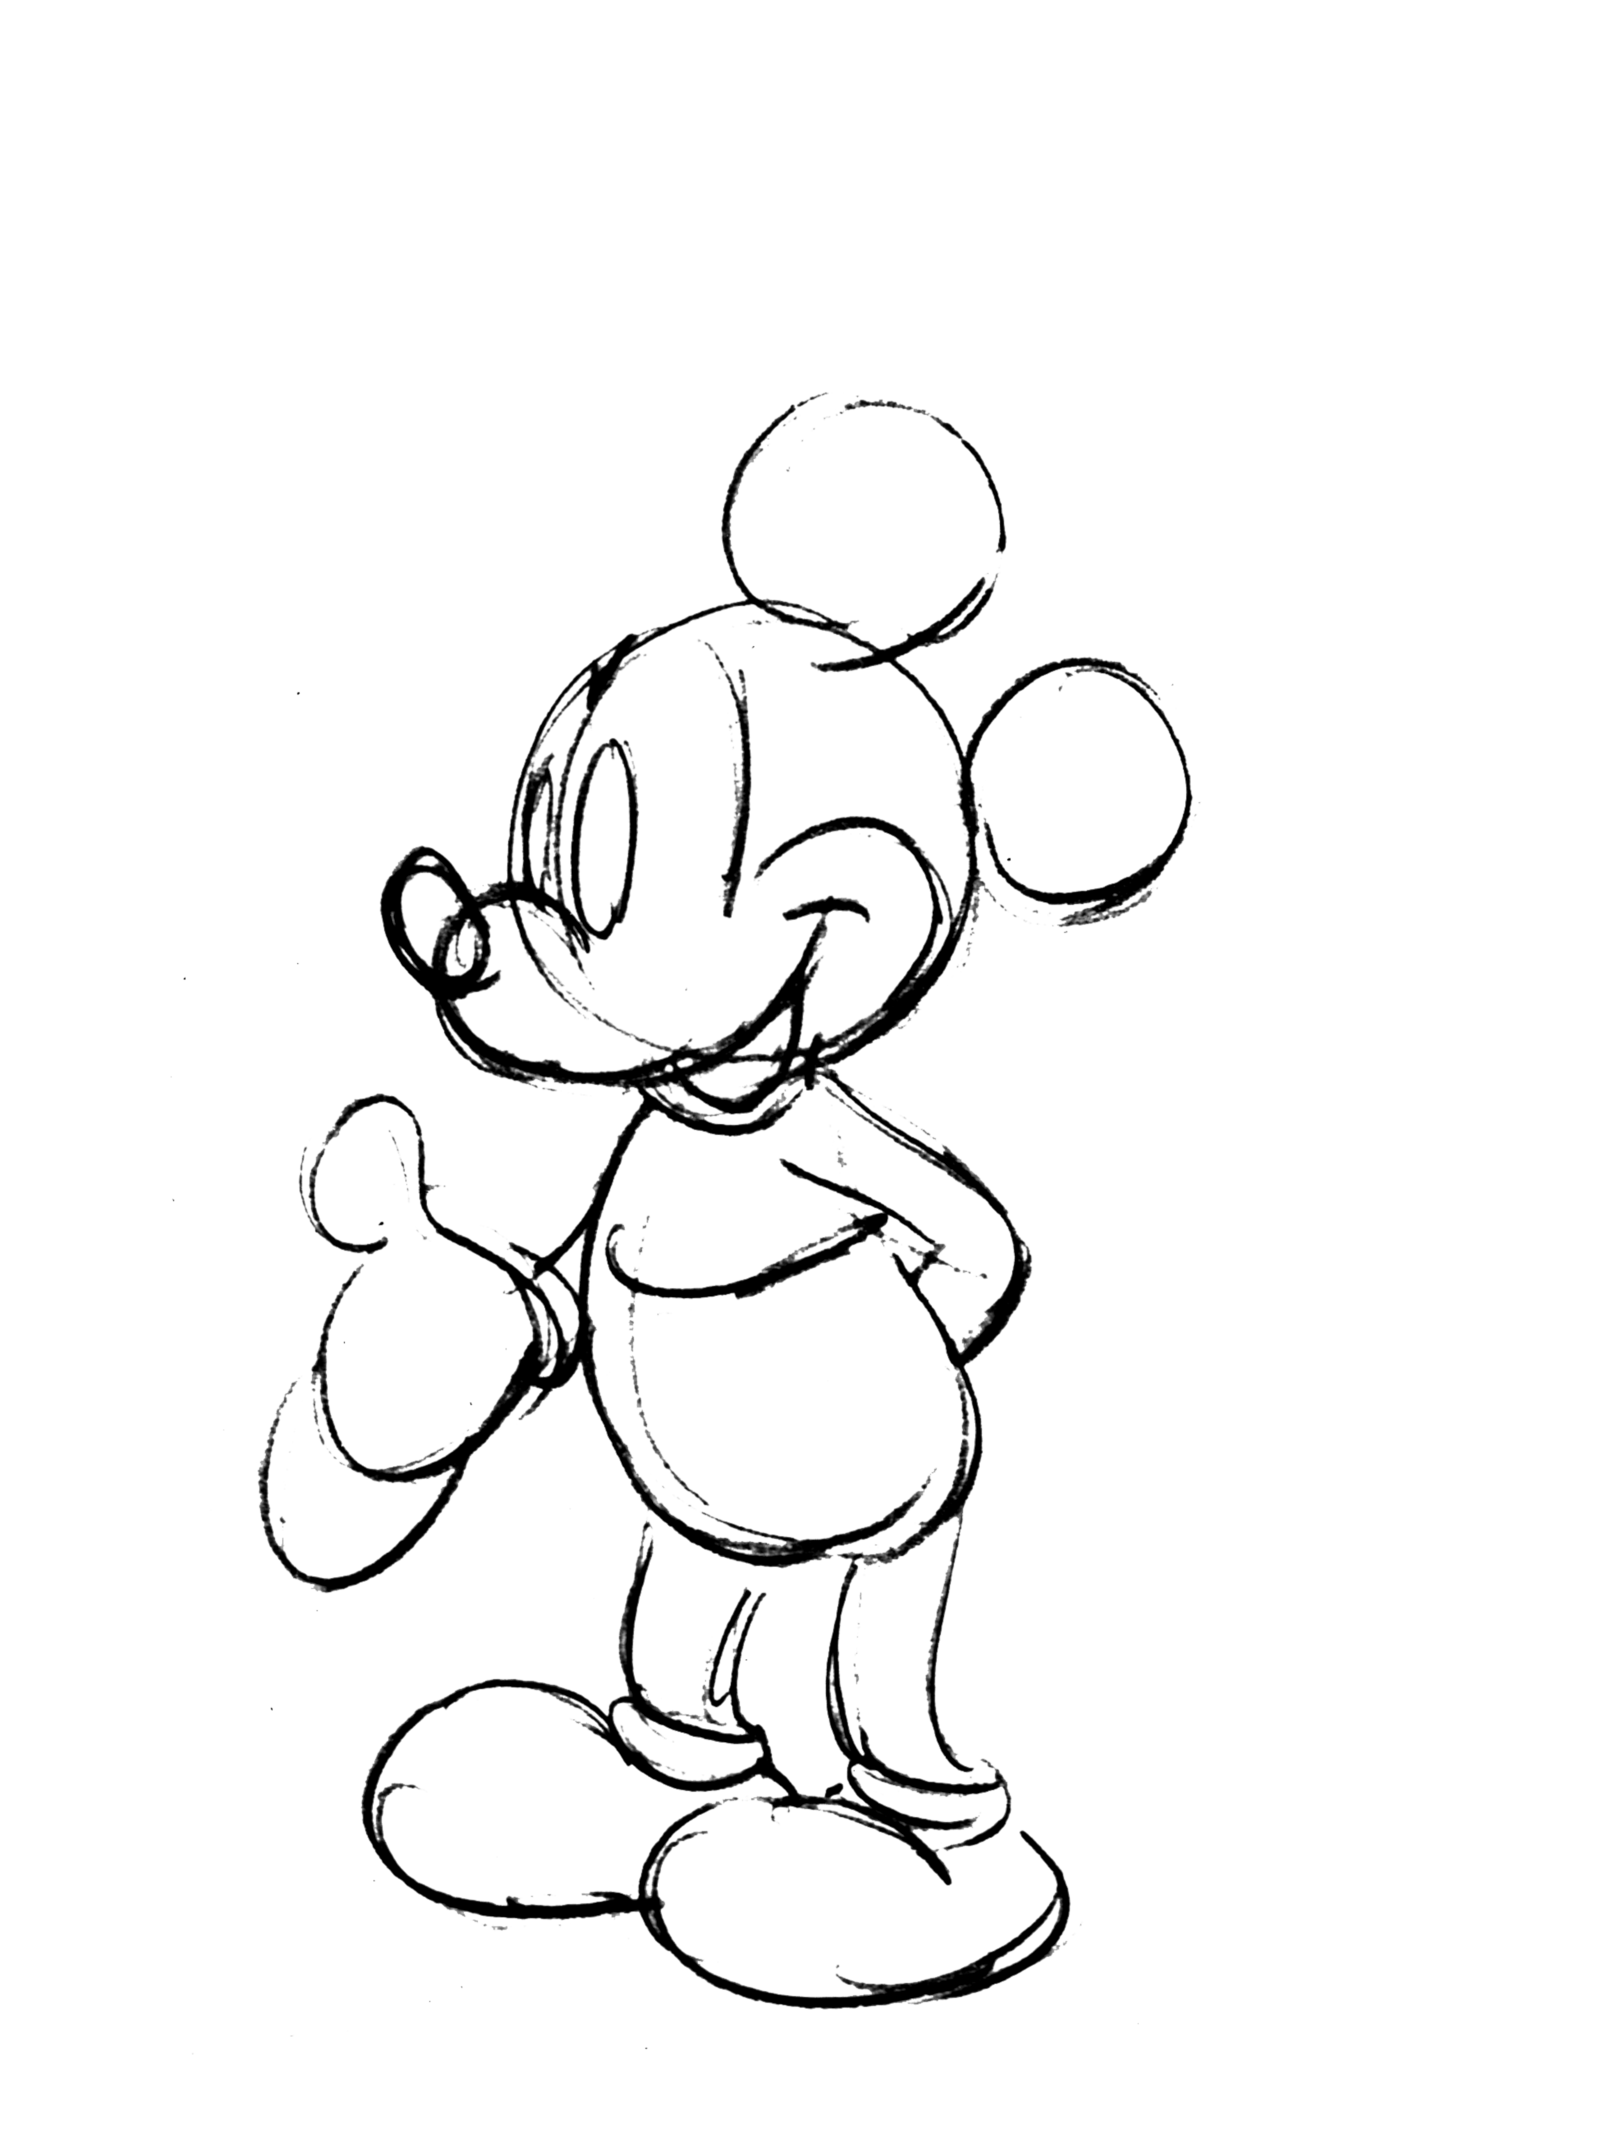 Gif animé d’un croquis de Mickey Mouse.